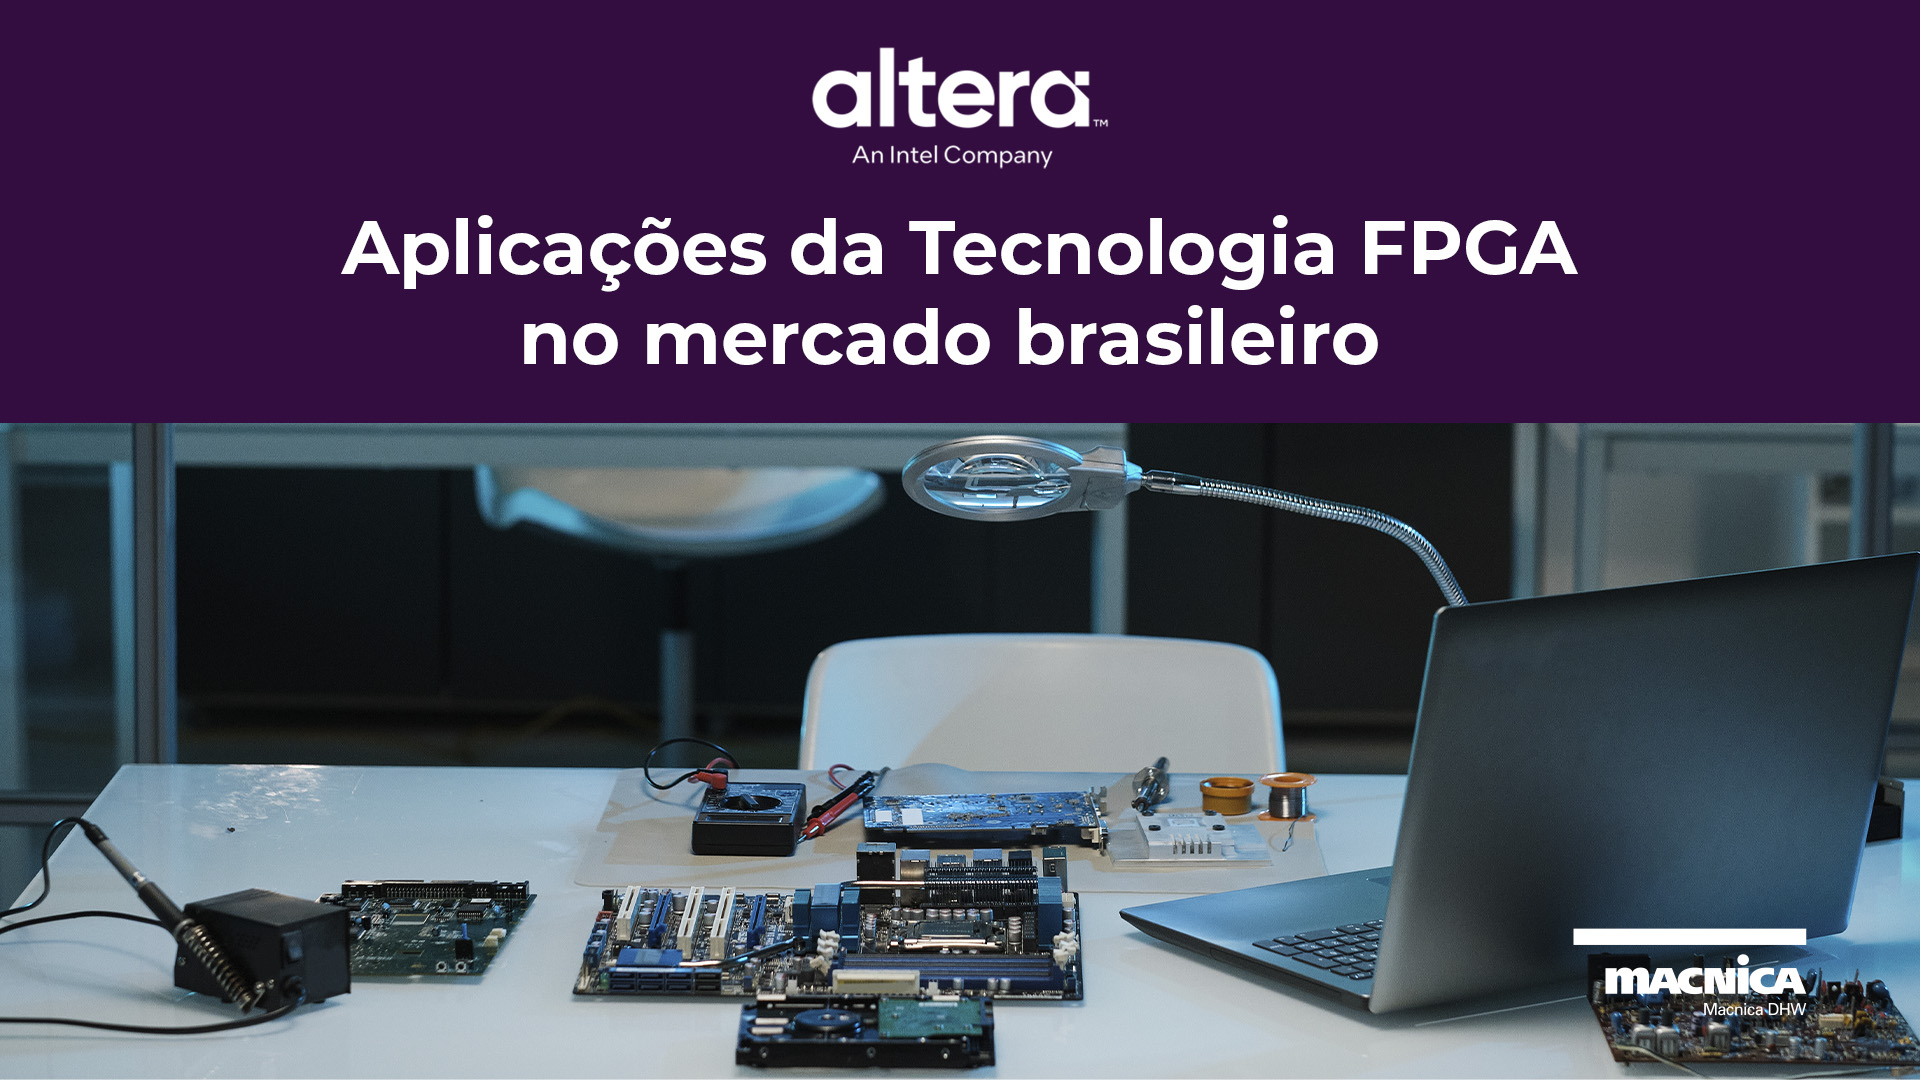 A Tecnologia FPGA Altera Intel no Mercado Brasileiro